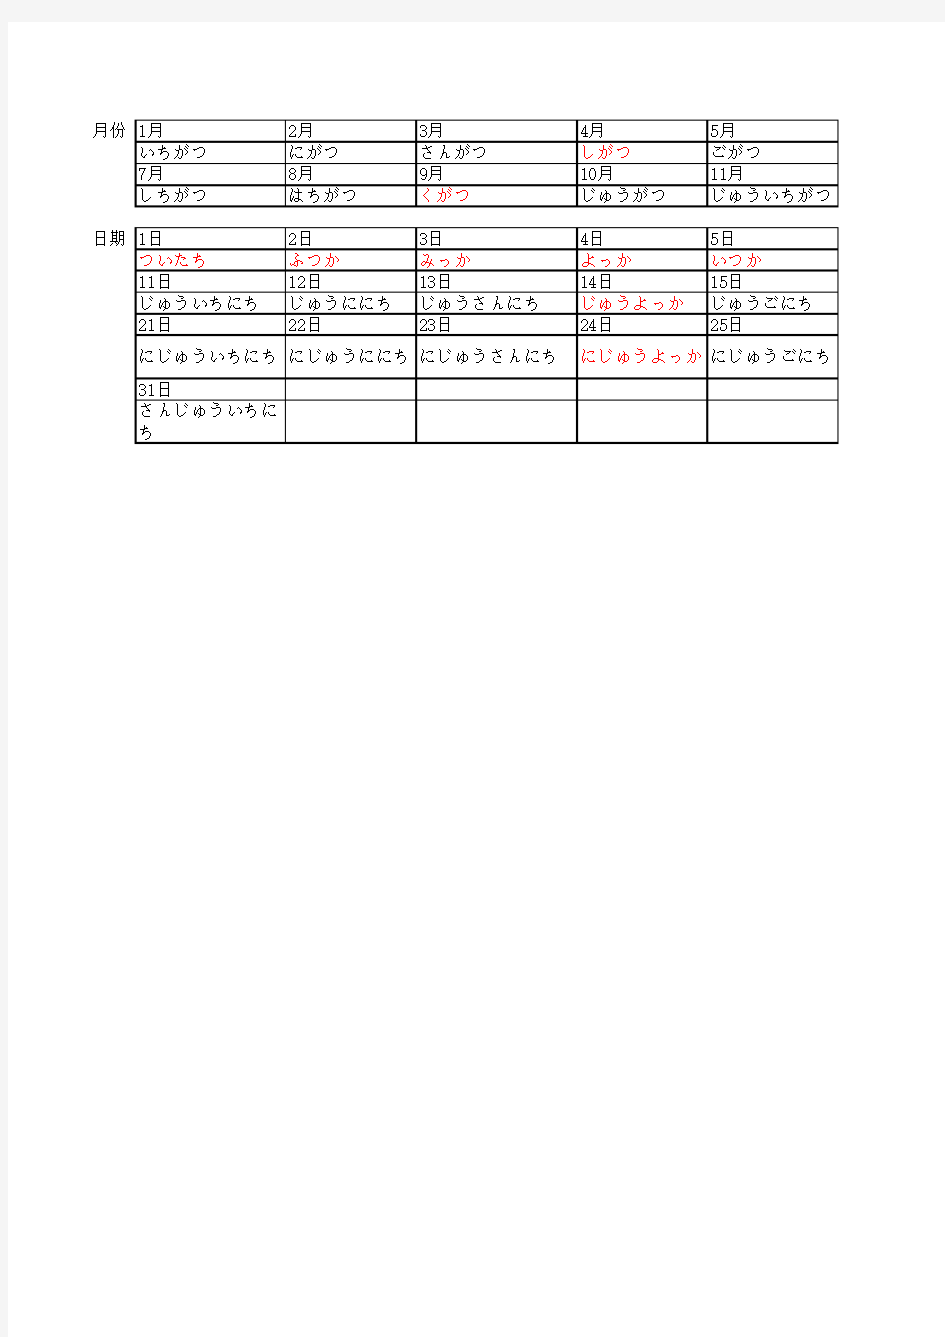 日语中月份与日期的表达